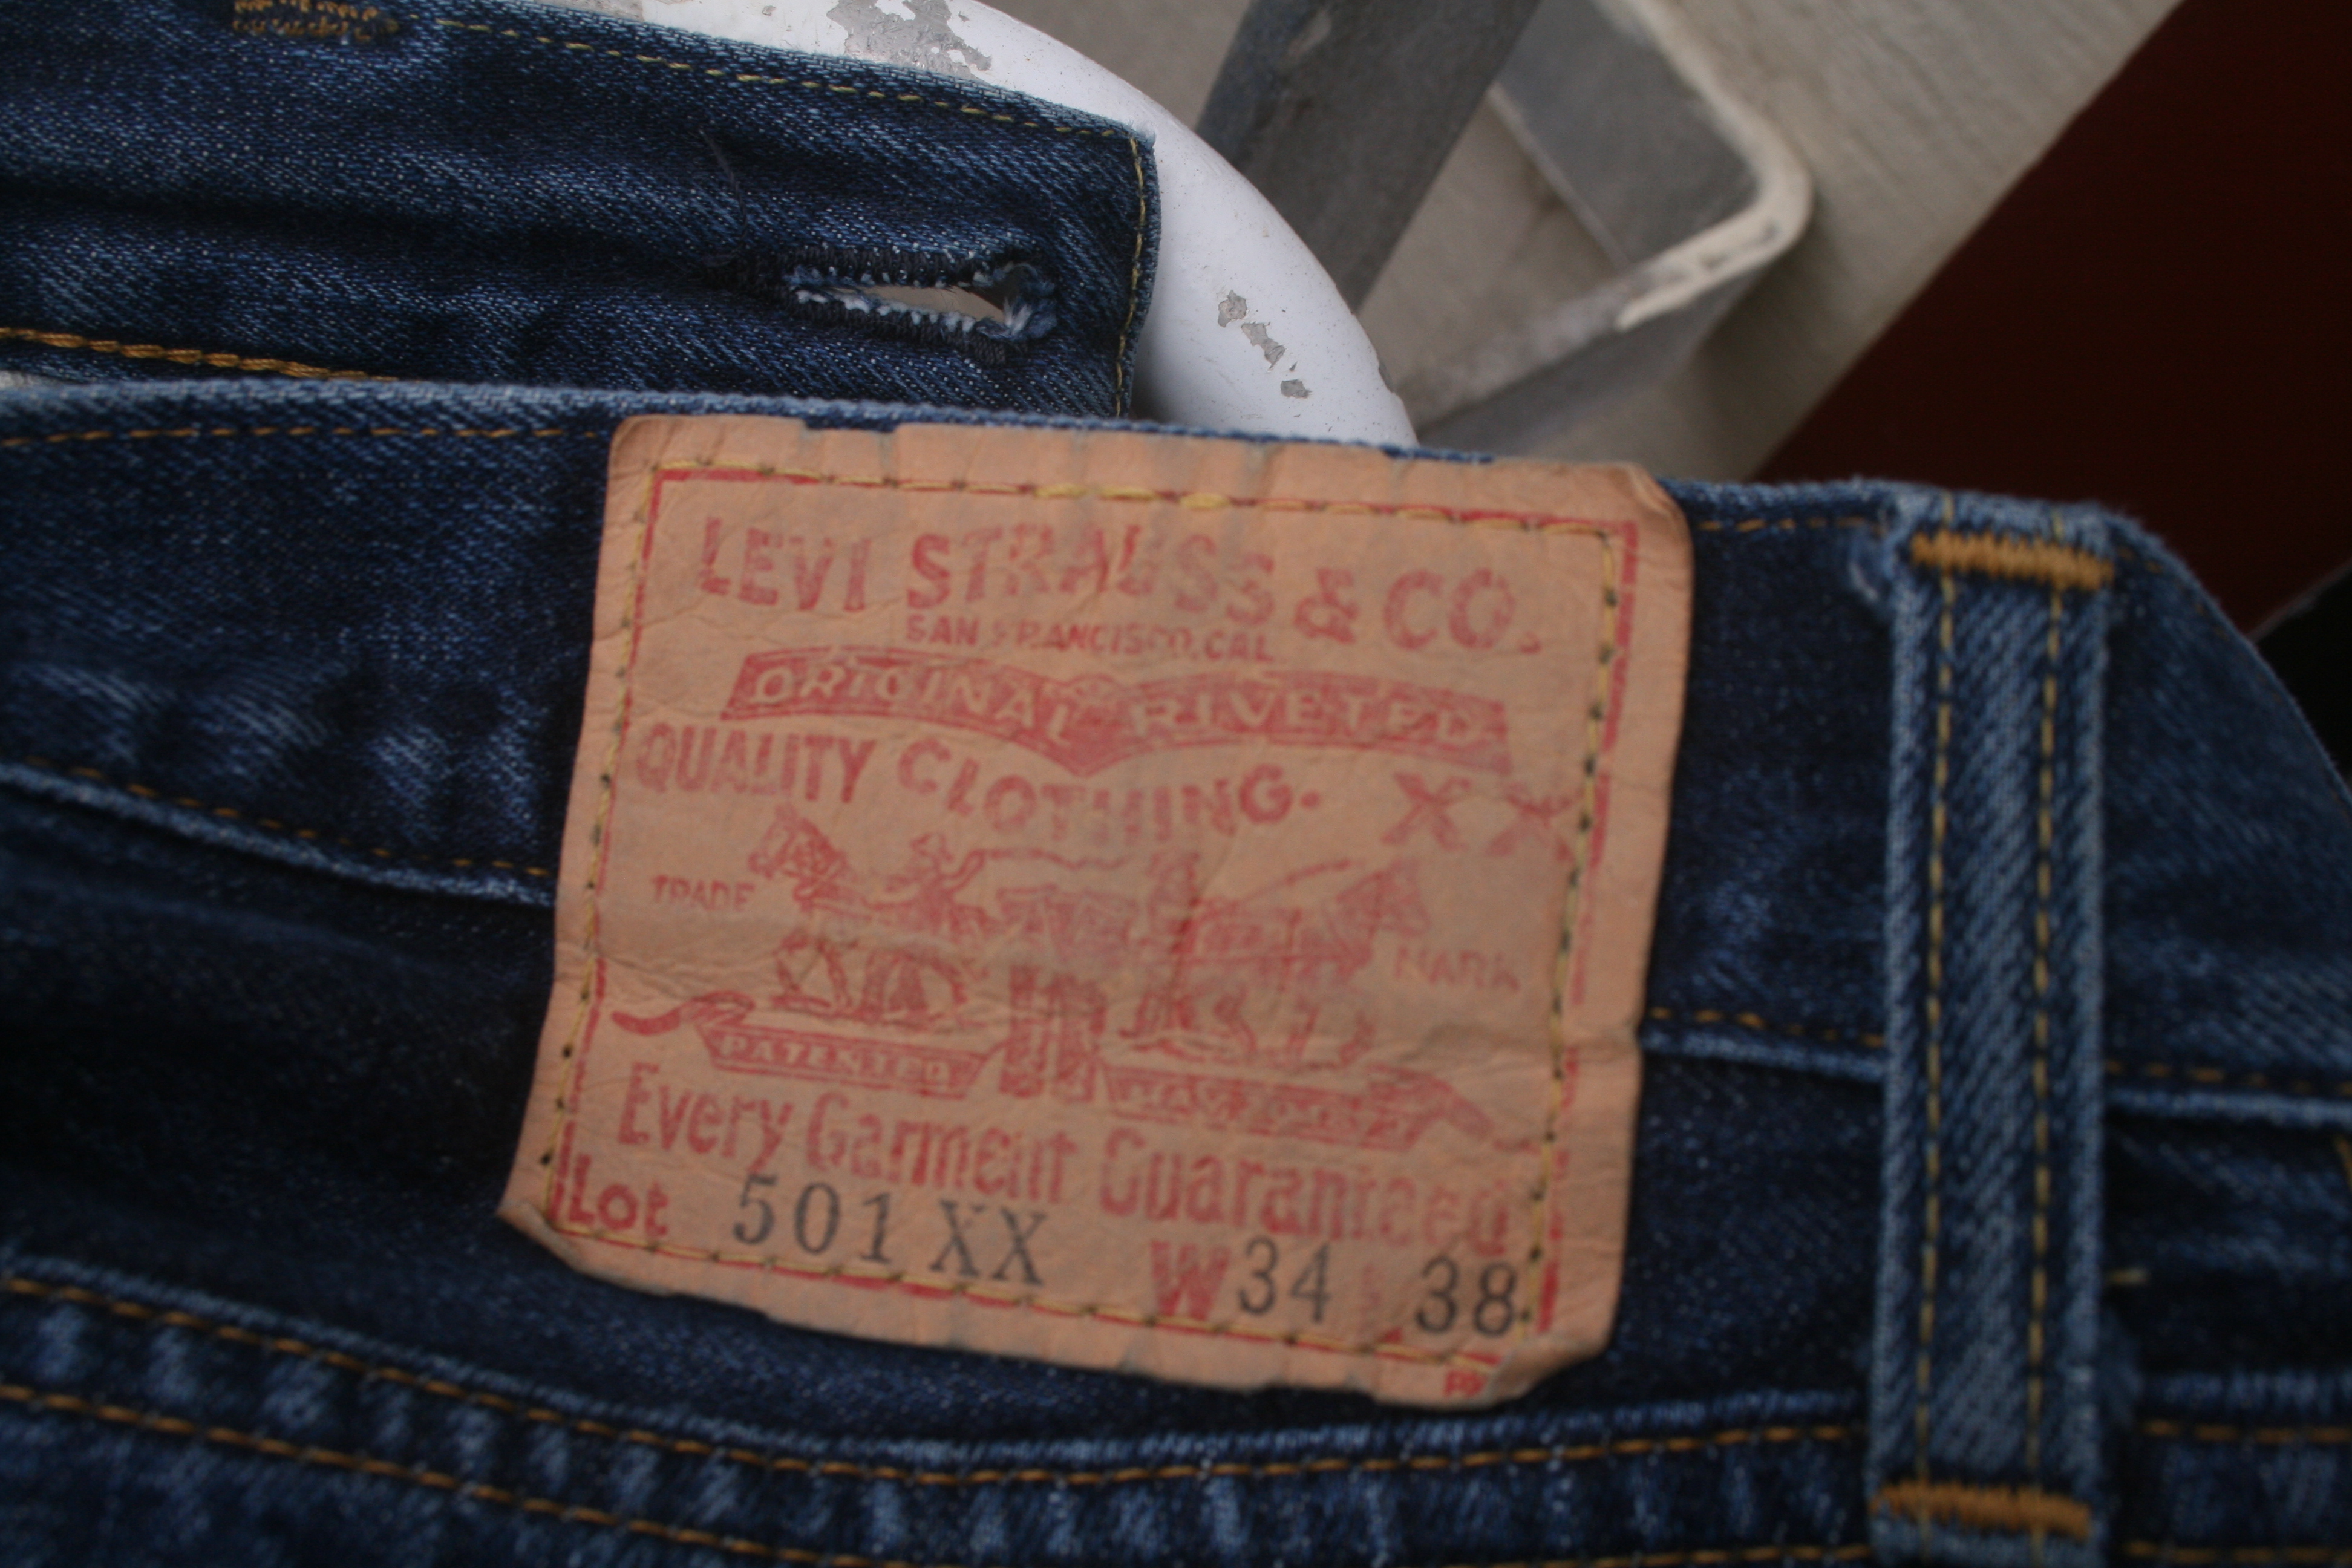 Levi's, Jeans, Levis Vintage Clothing Lvc 55 25 Nwt